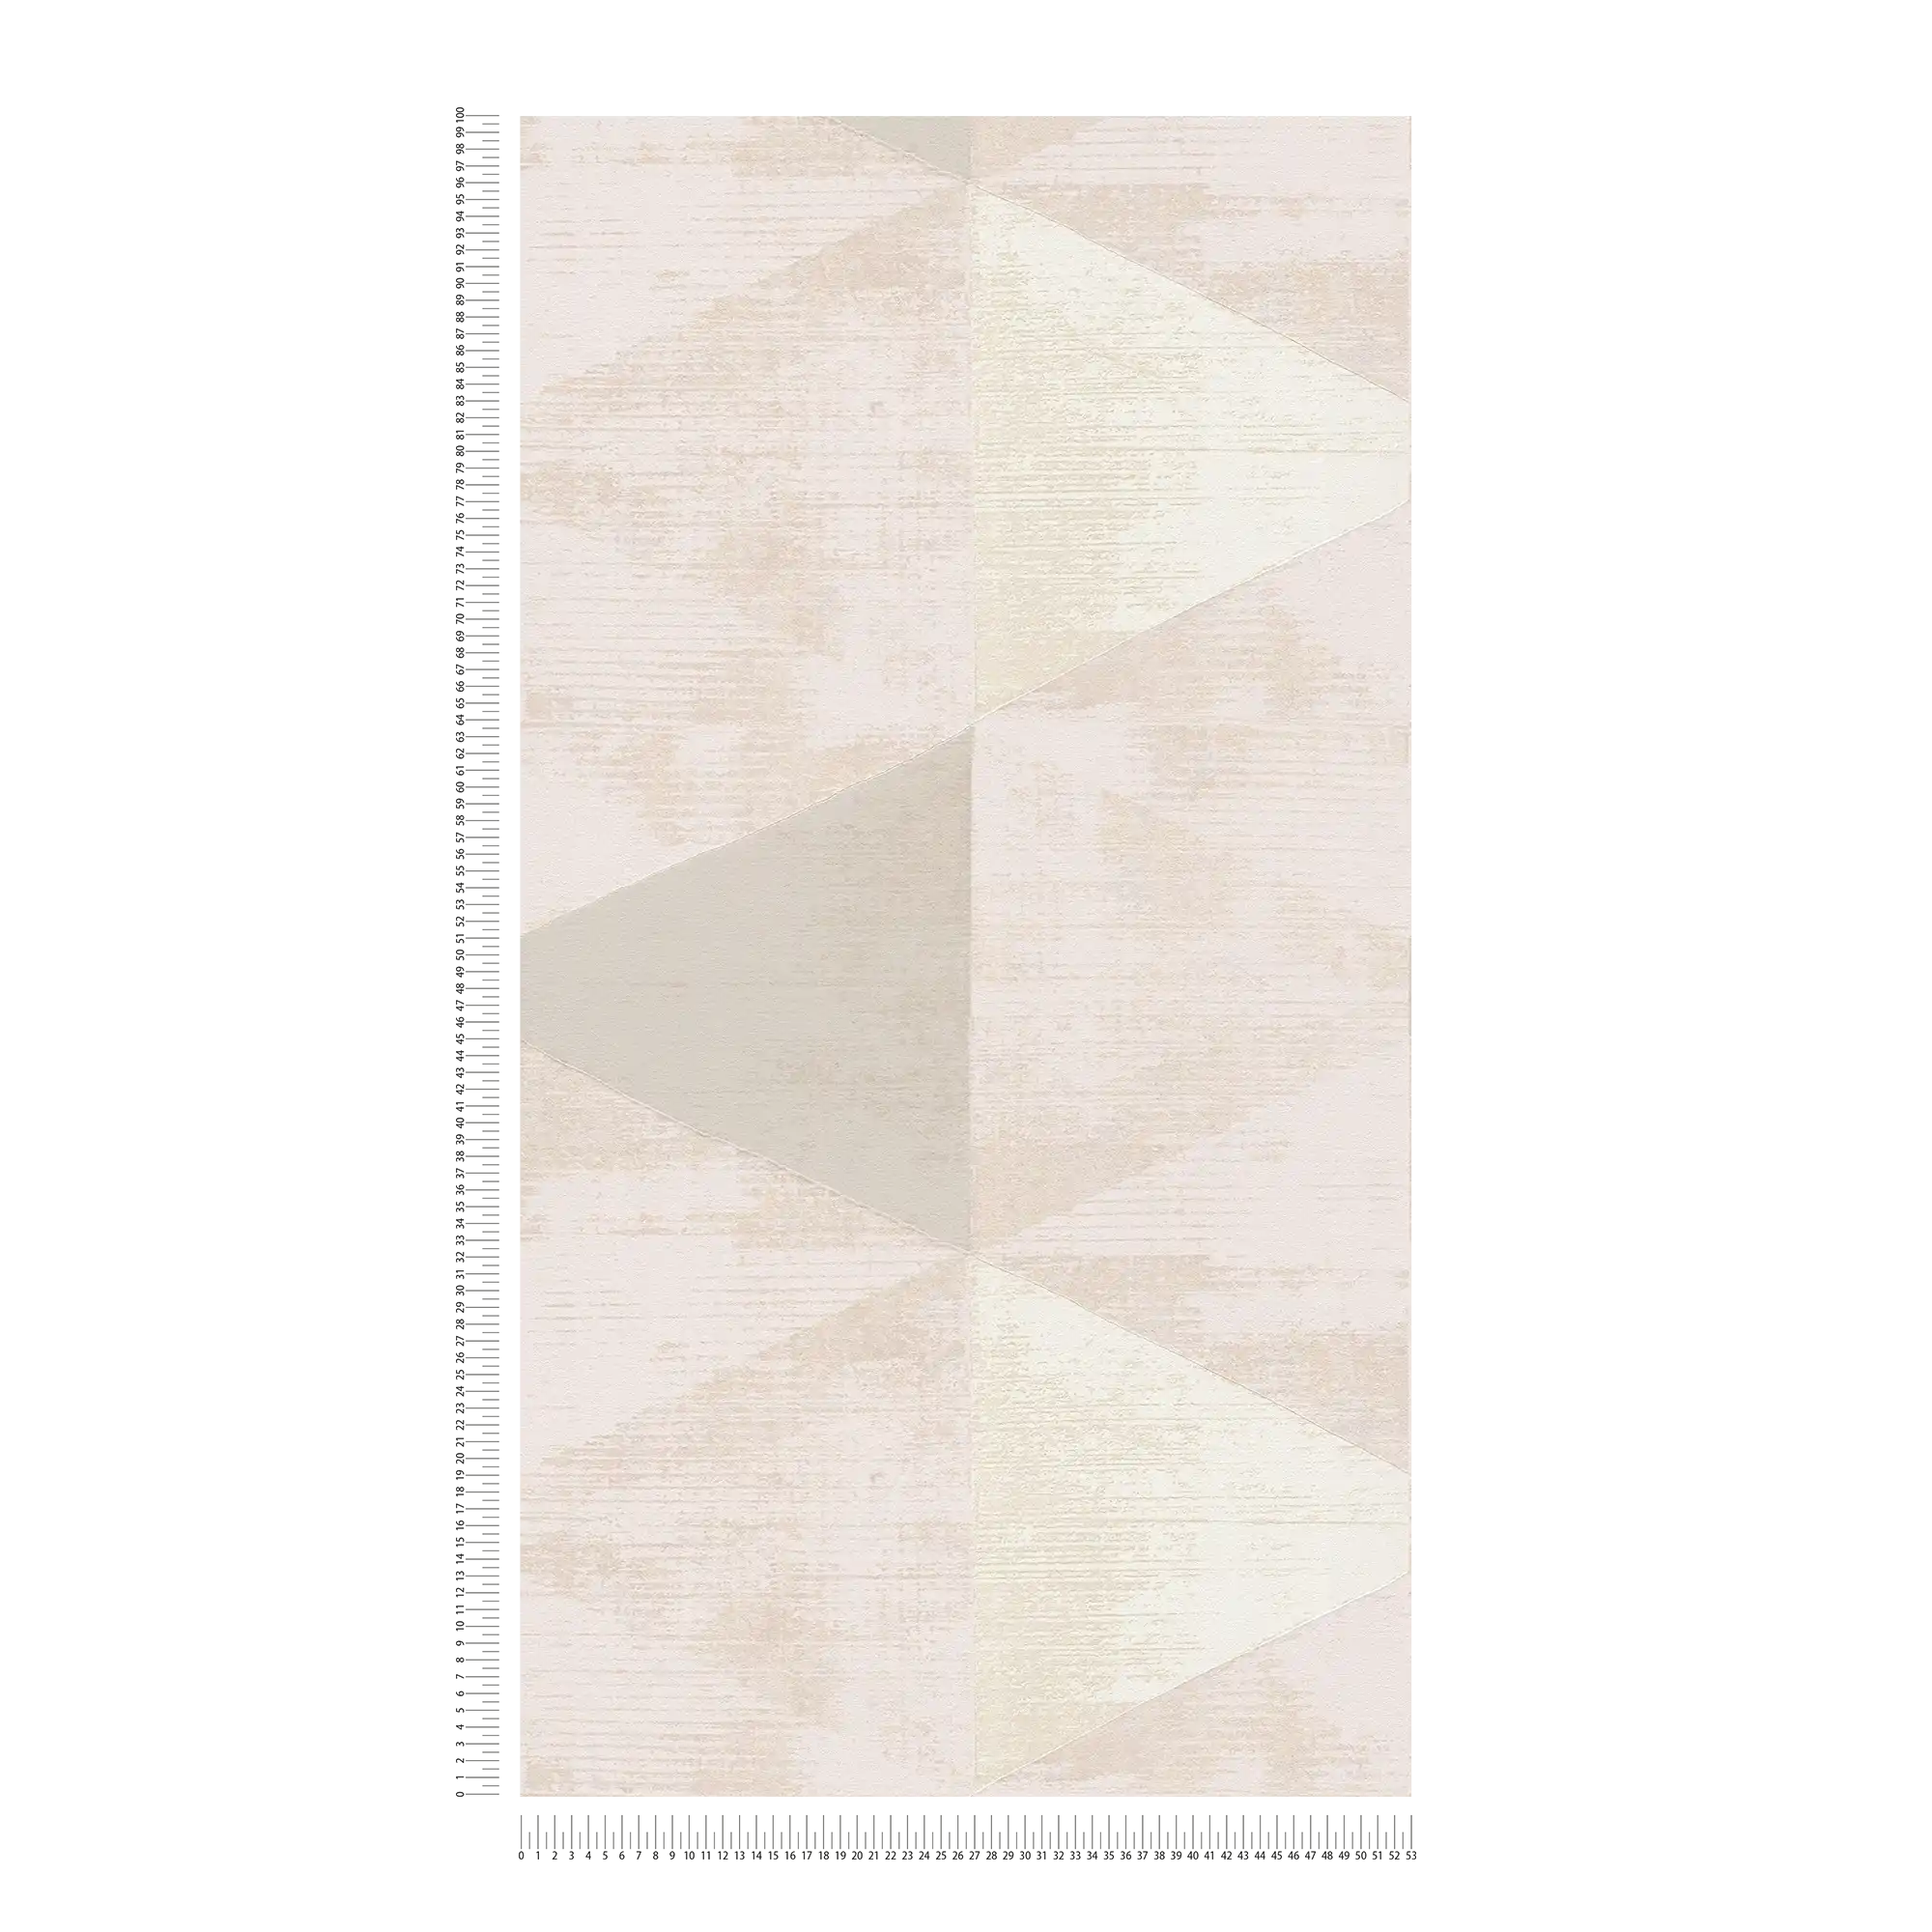             Papier peint intissé Motif à facettes avec accent métallique - métallique, beige, crème
        